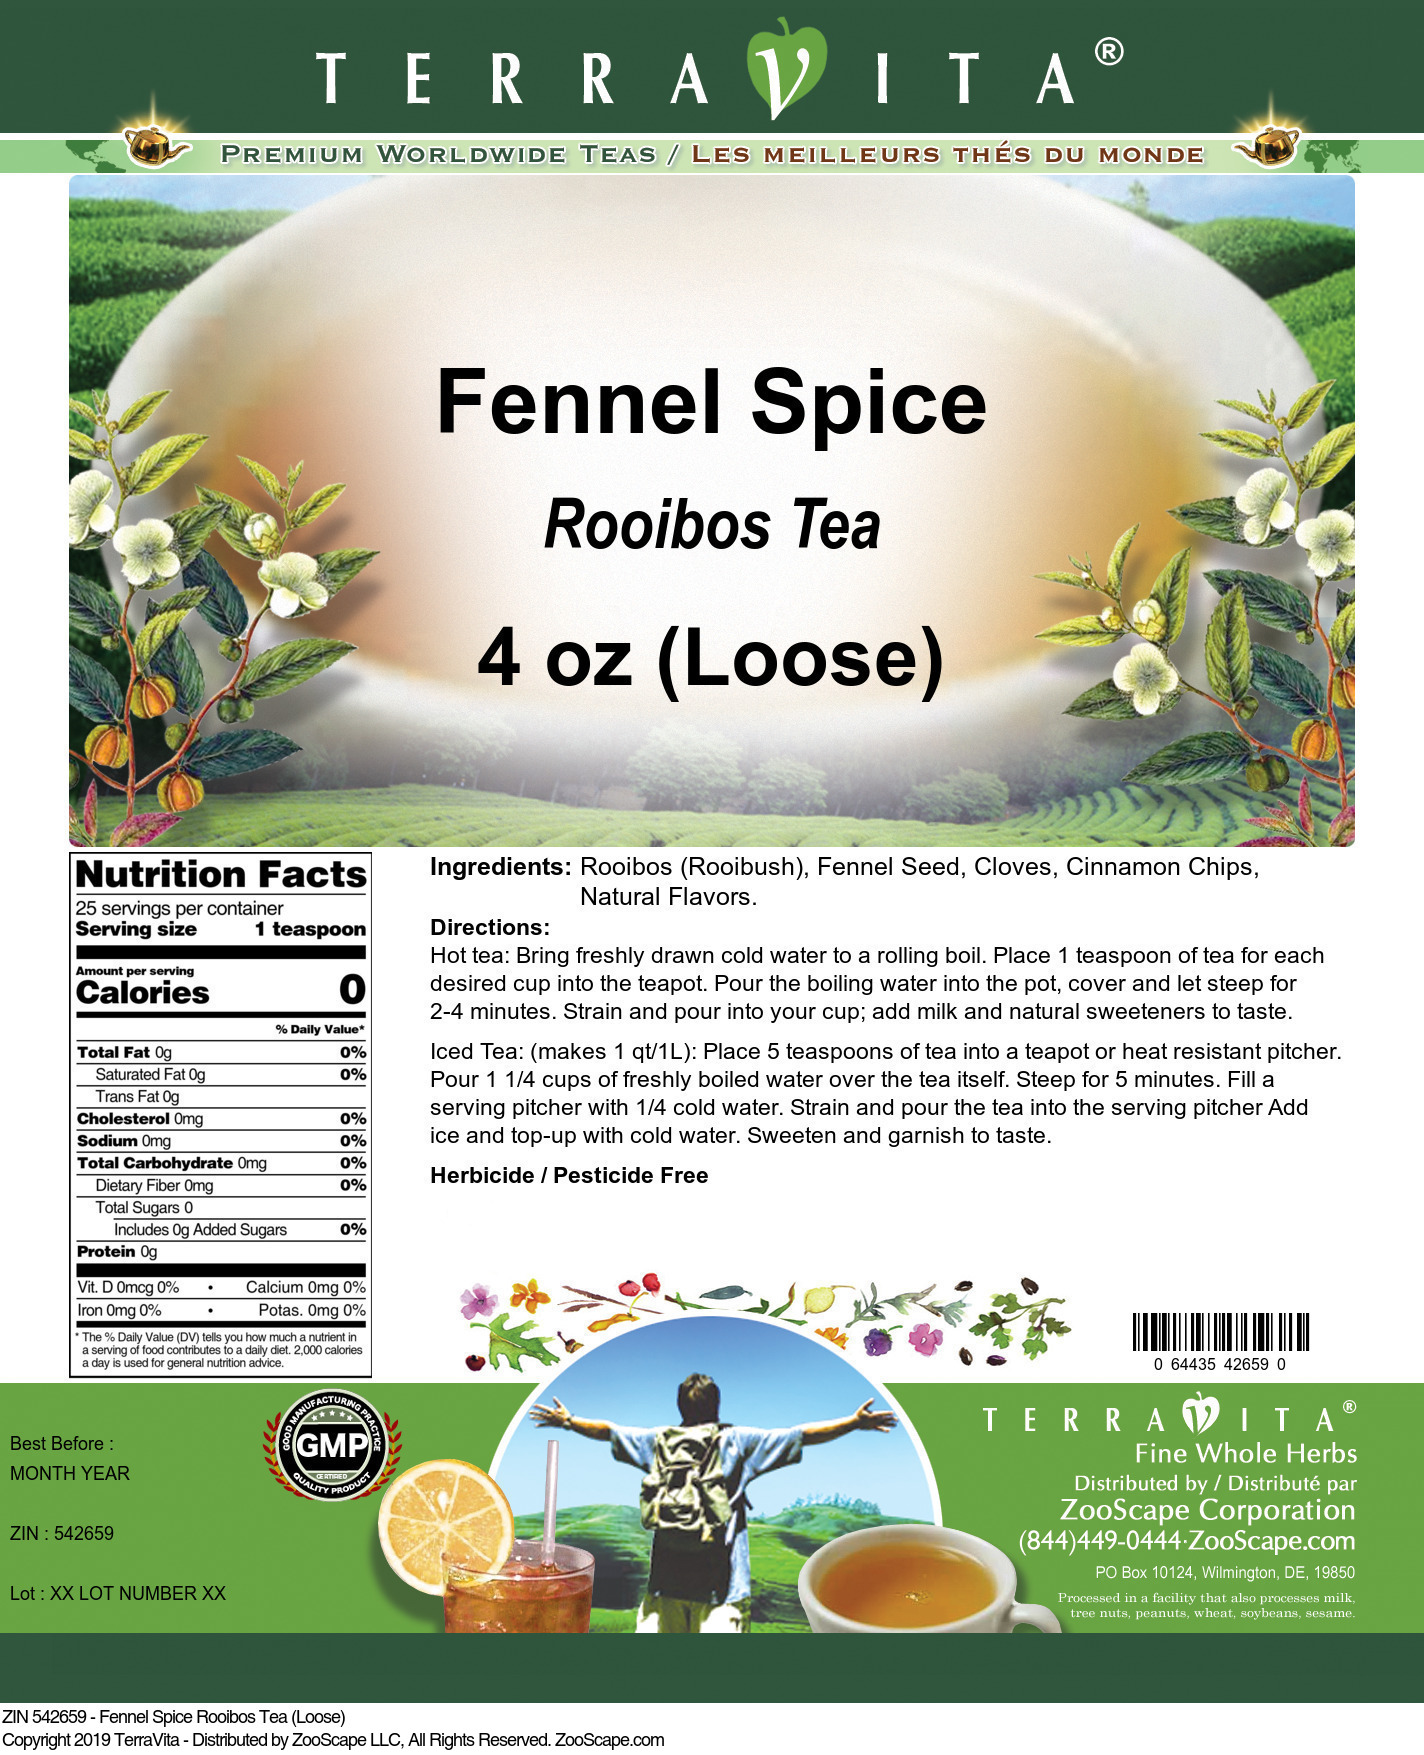 Fennel Spice Rooibos Tea (Loose) - Label